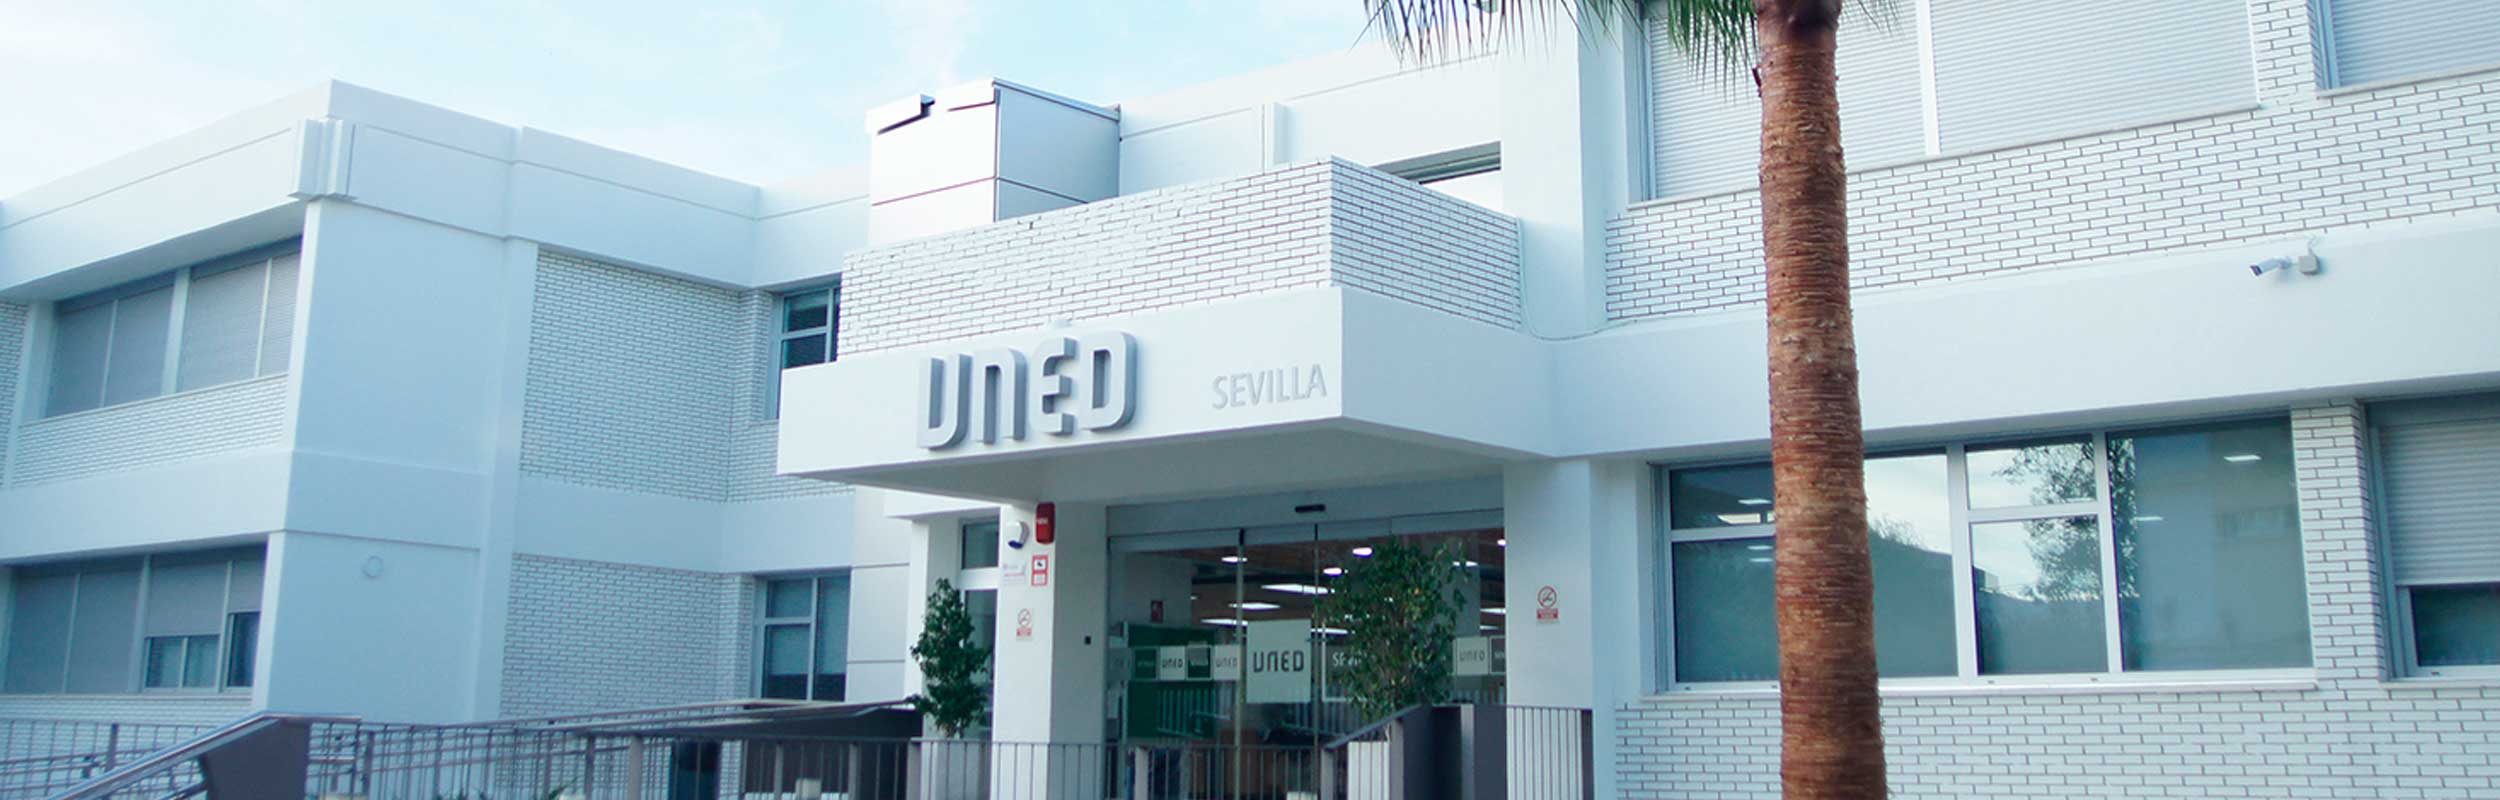 Inclusión educativa del Centro Asociado de Sevilla de la UNED